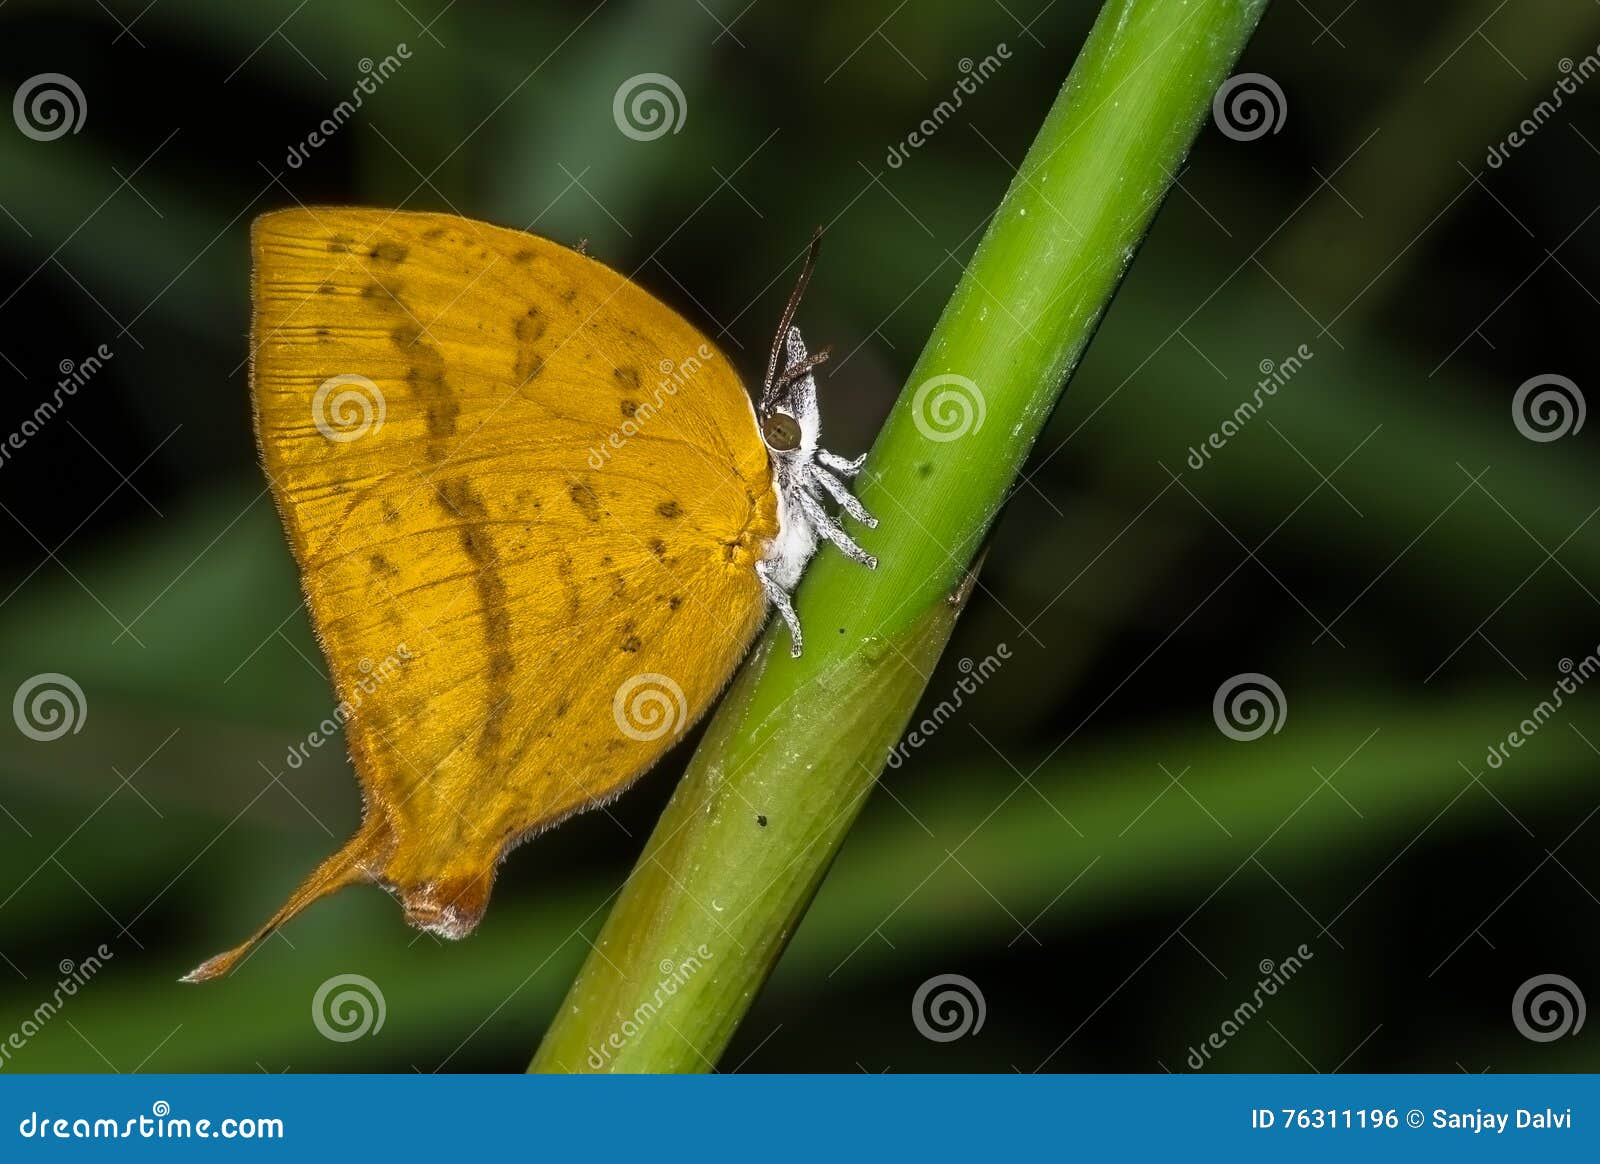 yamfly butterfly